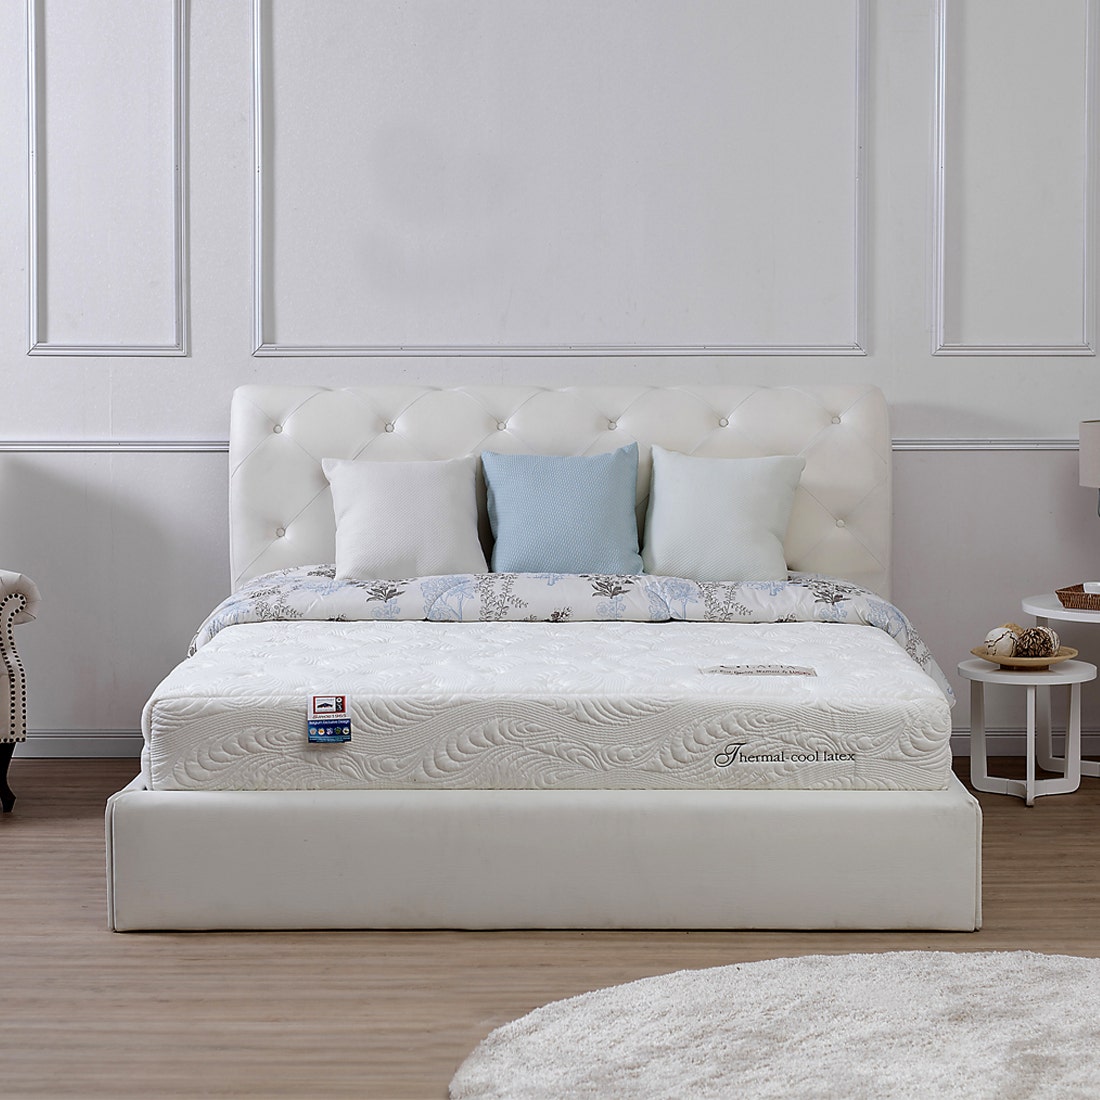 39001246-mattress-bedding-mattresses-latex-mattress-31